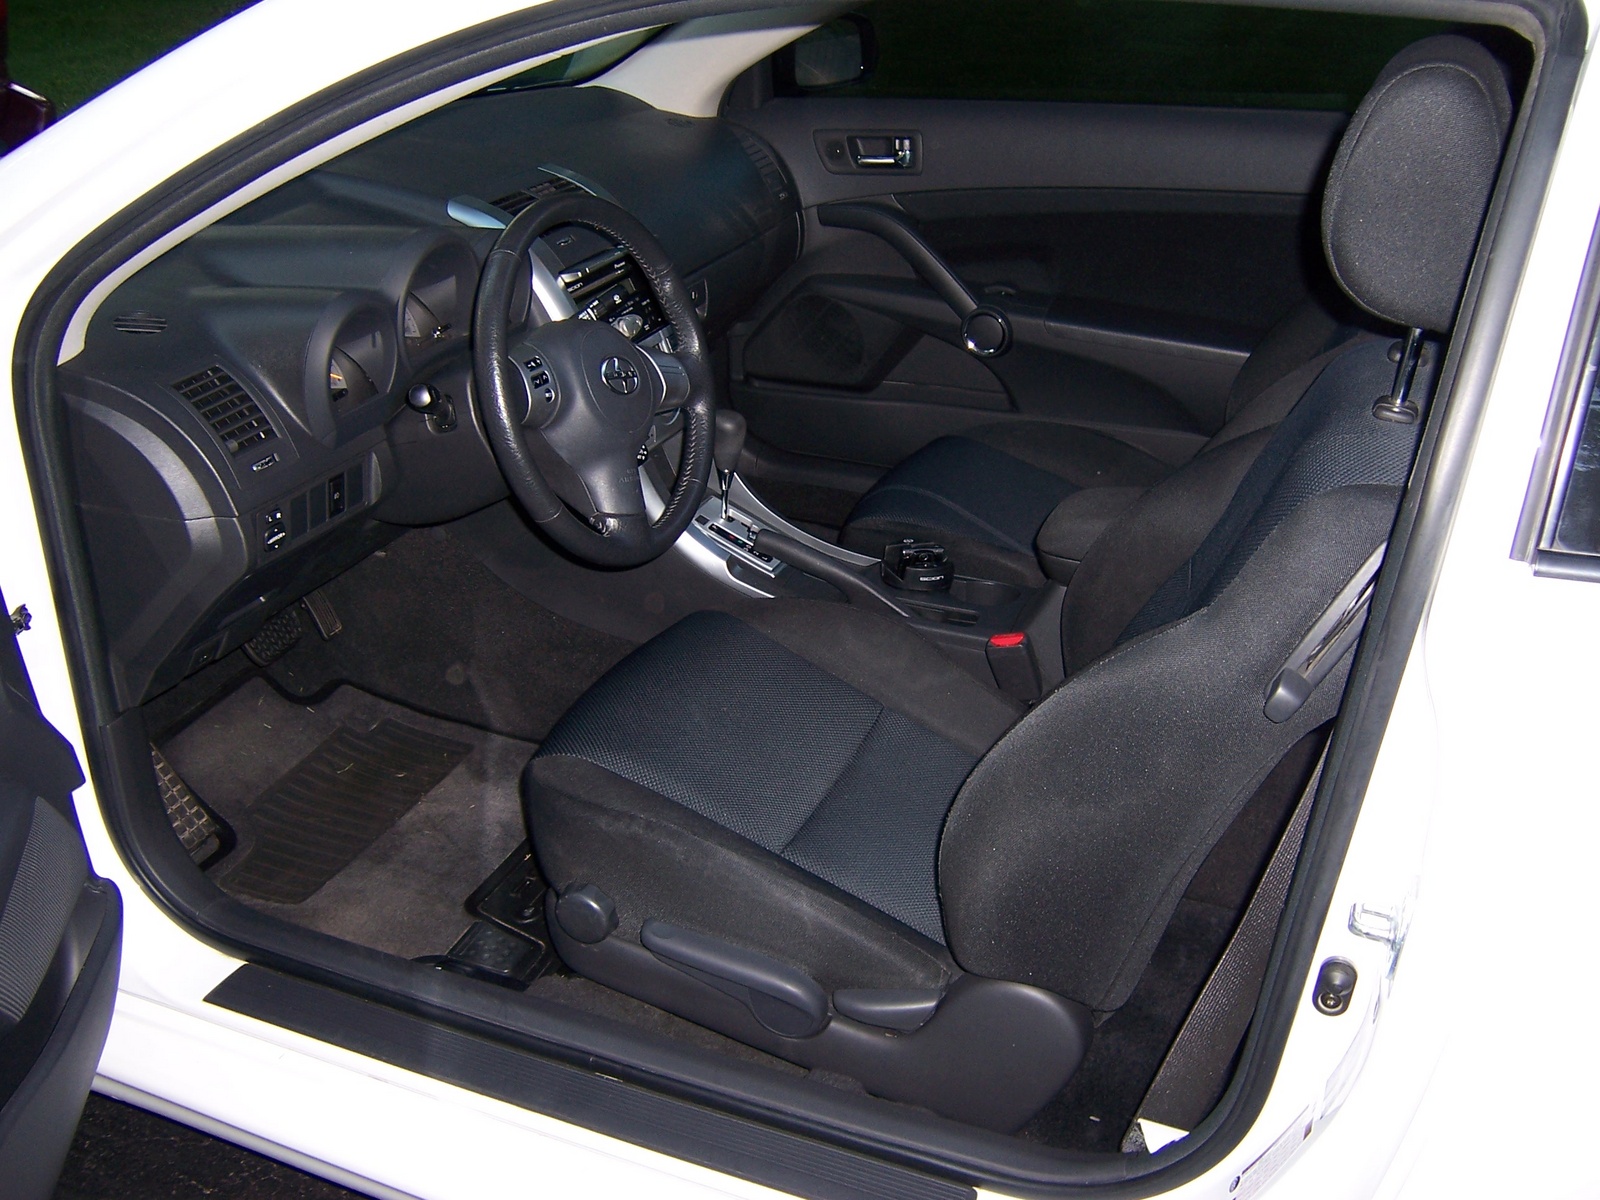 Toyota scion tc 2006 interior